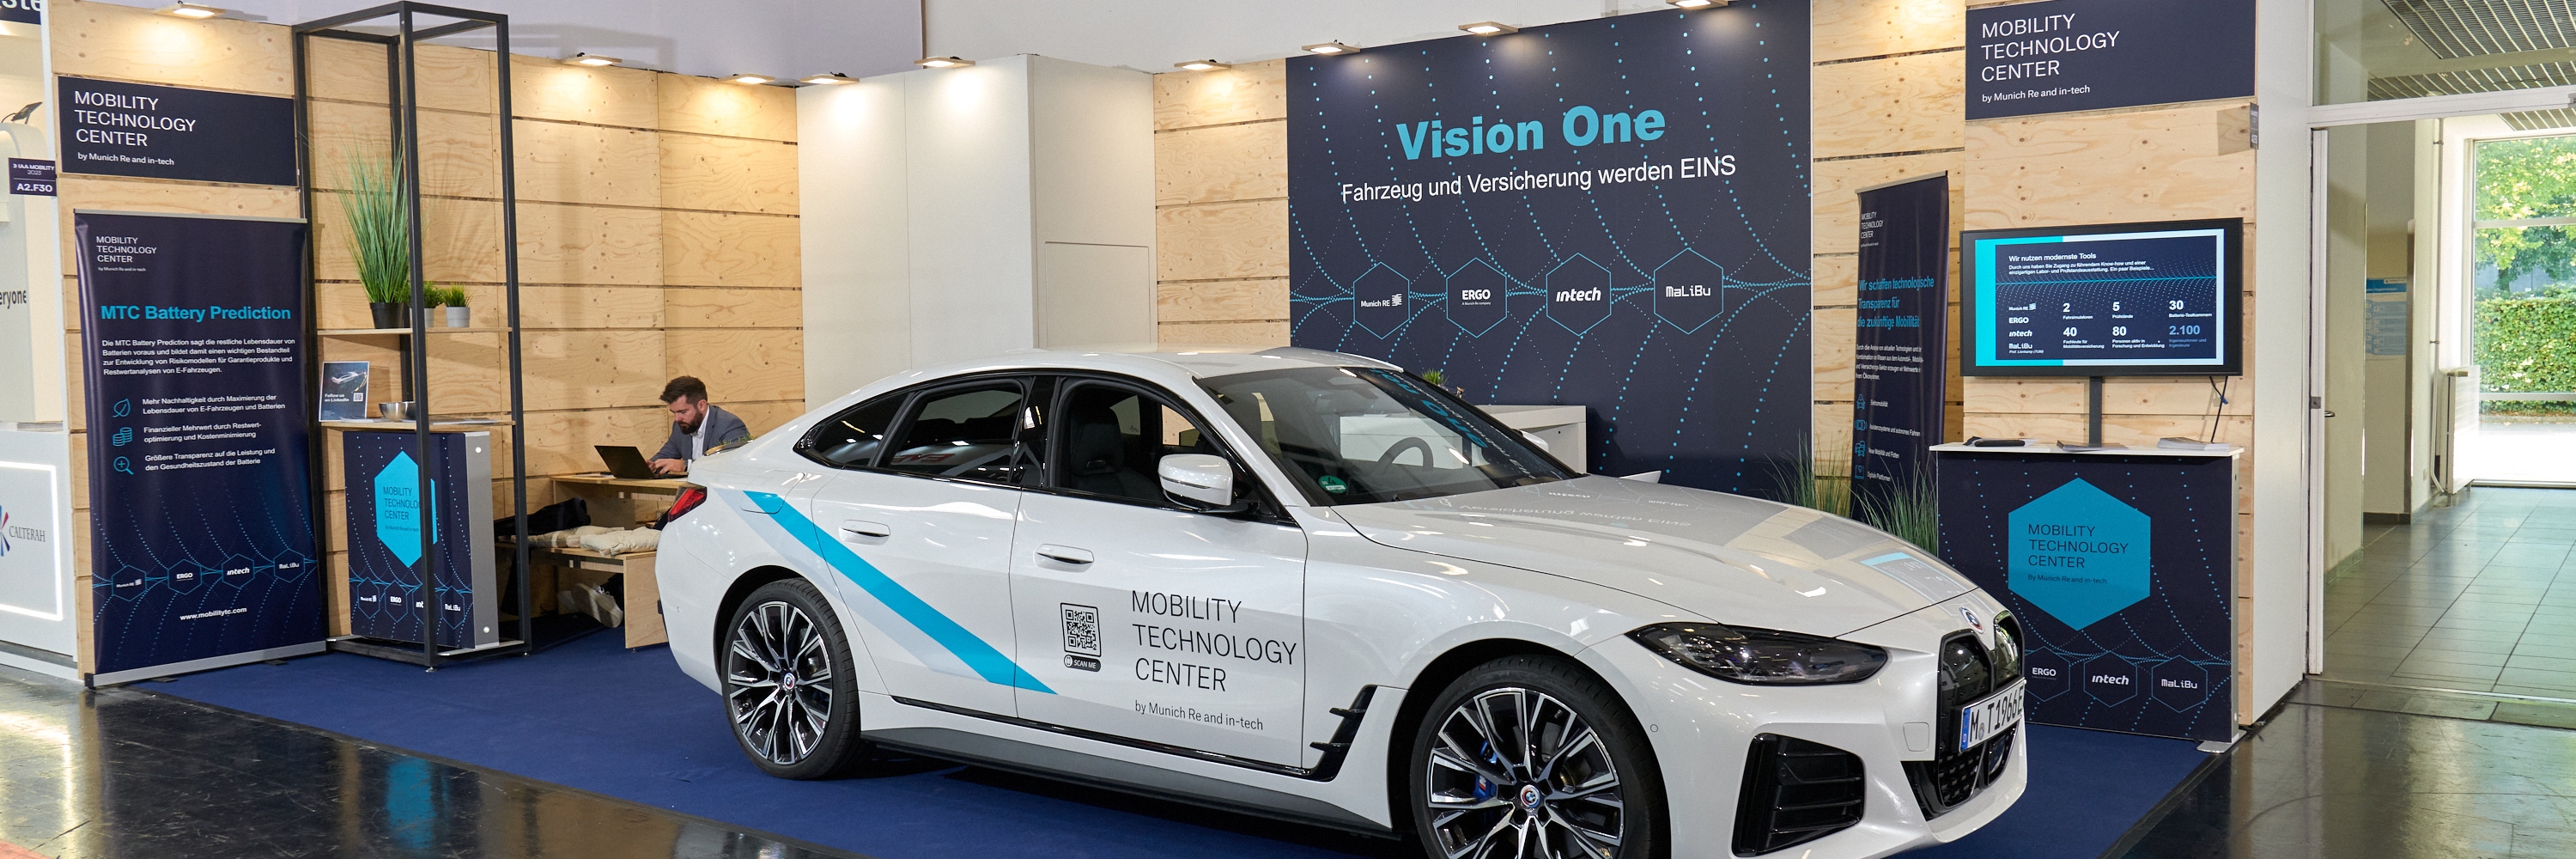 Vision One – Fahrzeug und Versicherung werden EINS